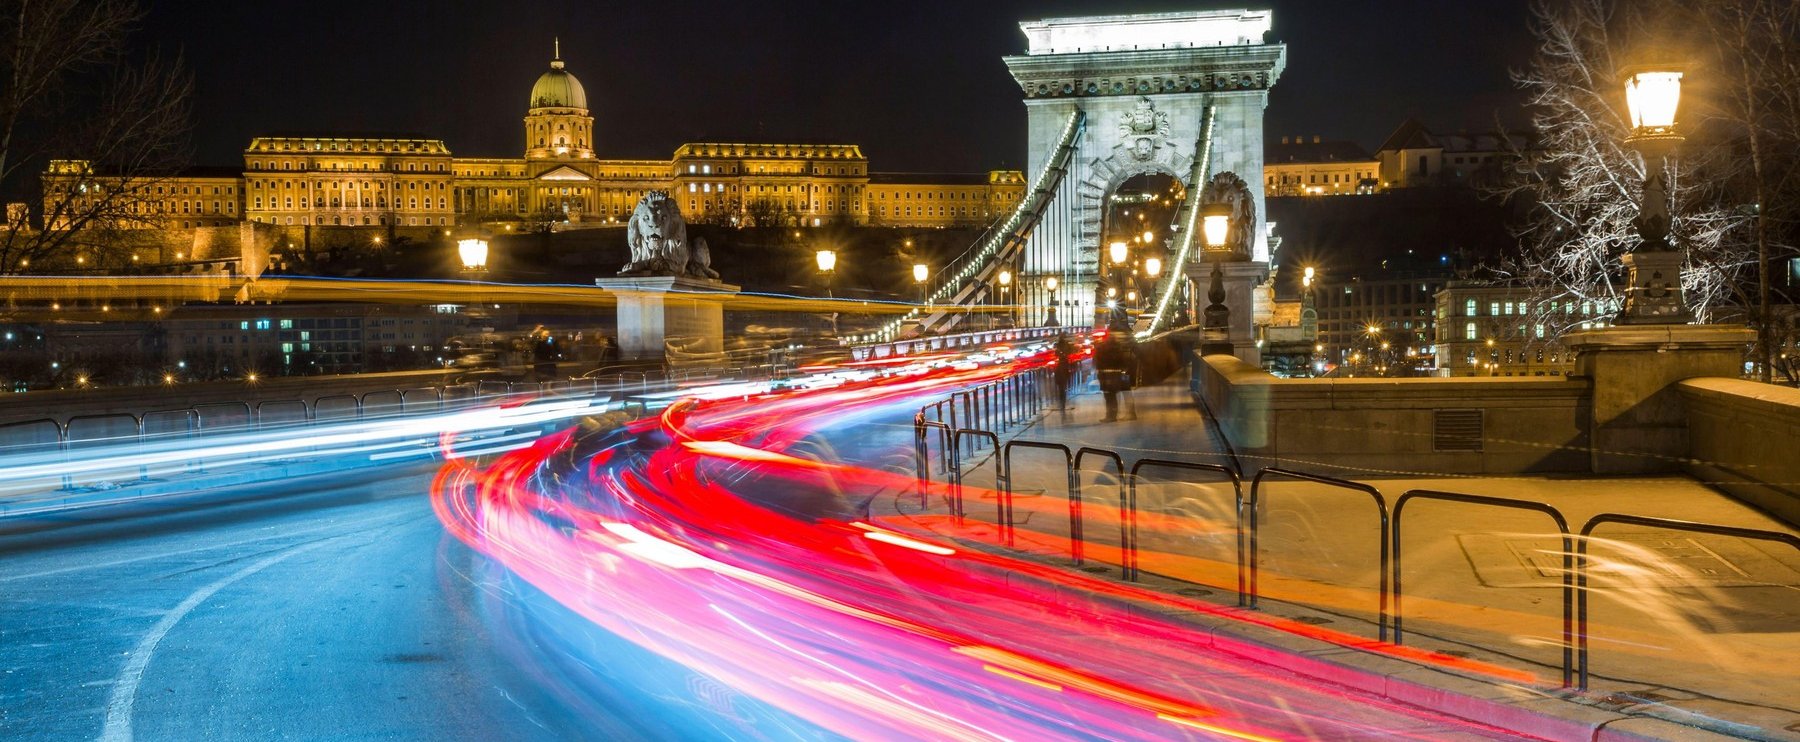 Futurisztikus csodaváros lesz Budapestből? Bámulatos képeken, hogy fog kinézni a magyar főváros a jövőben